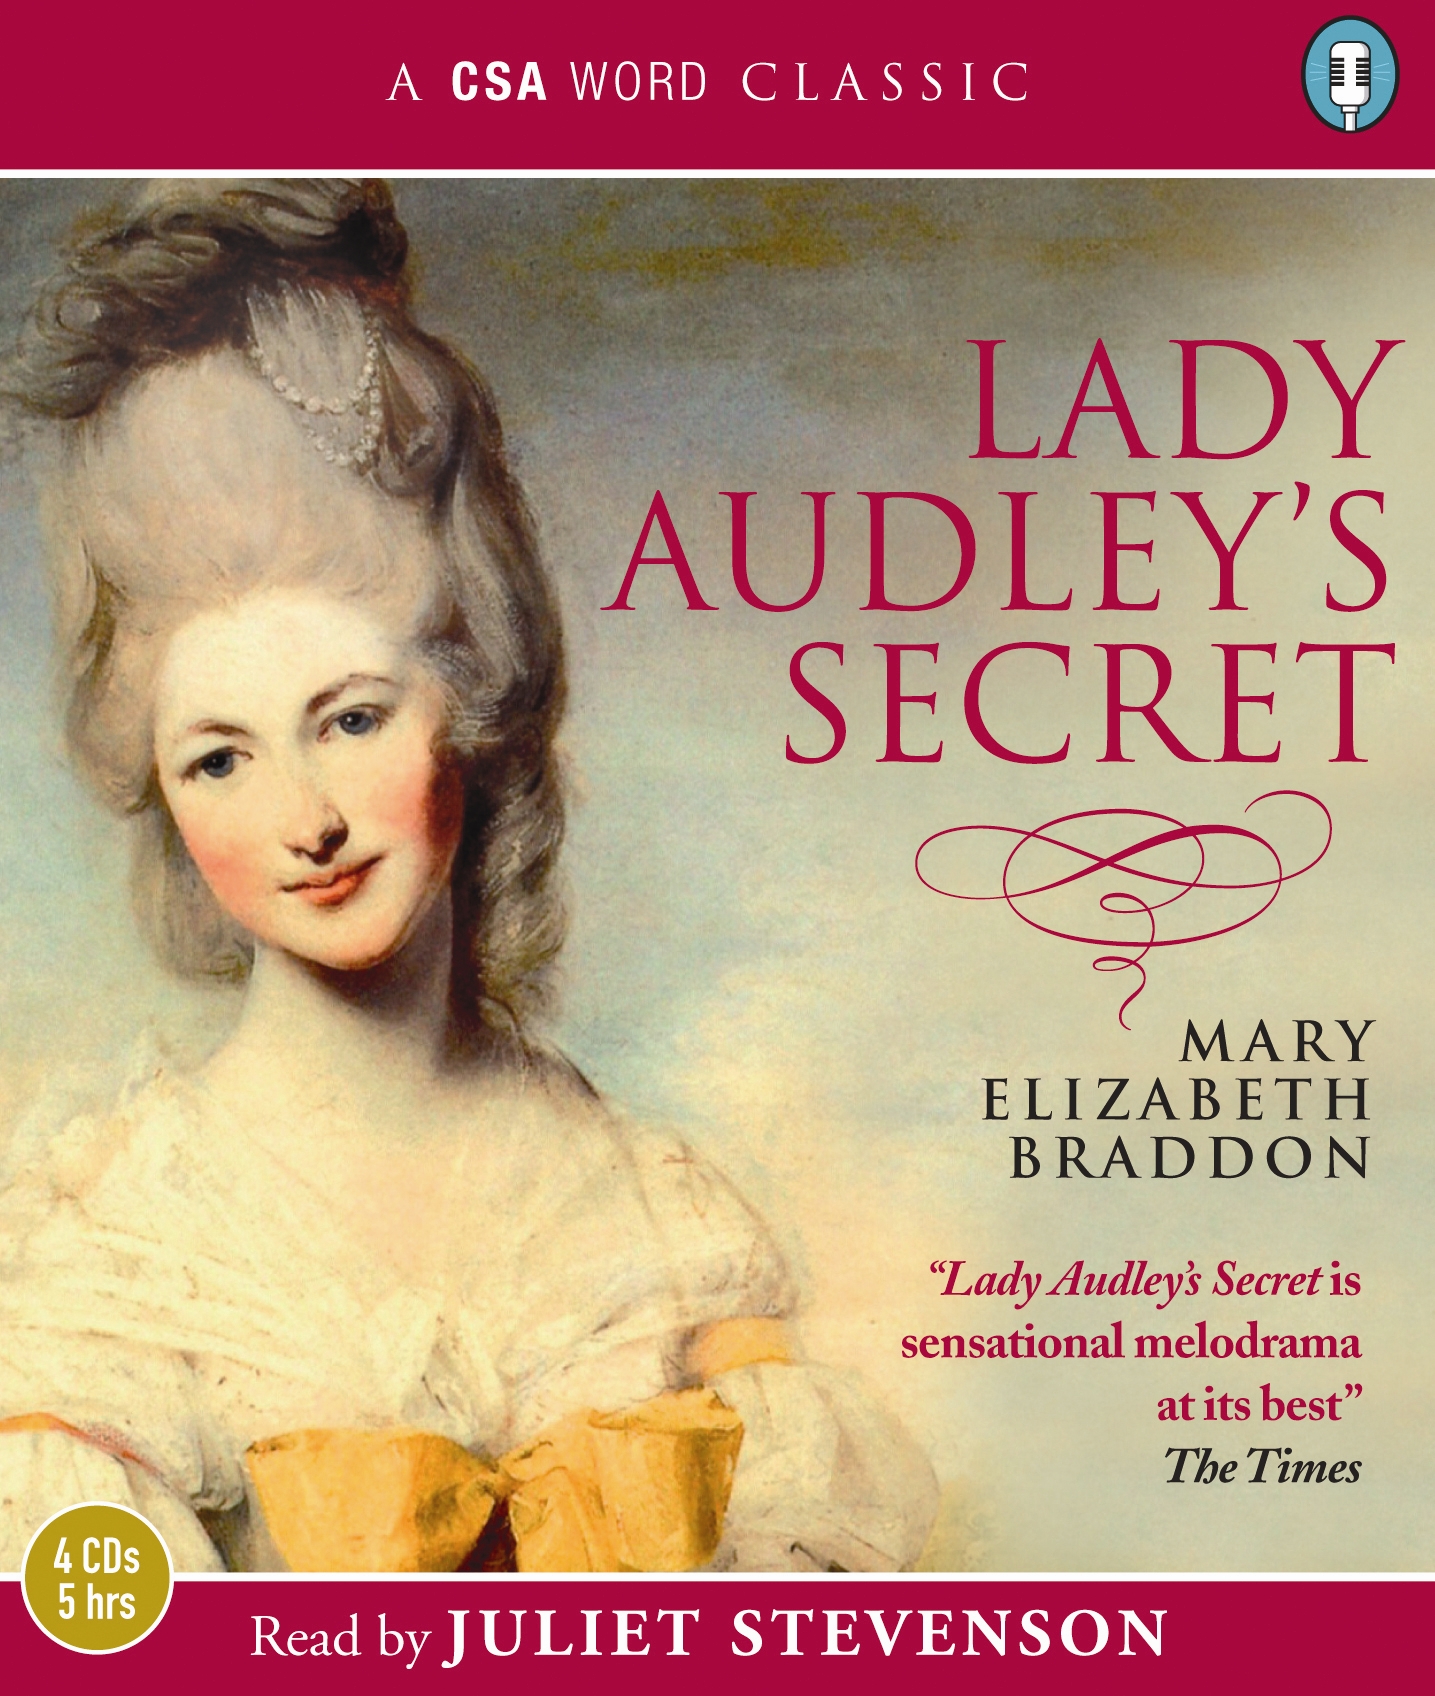 Lady Audley's Secret - Wikipedia